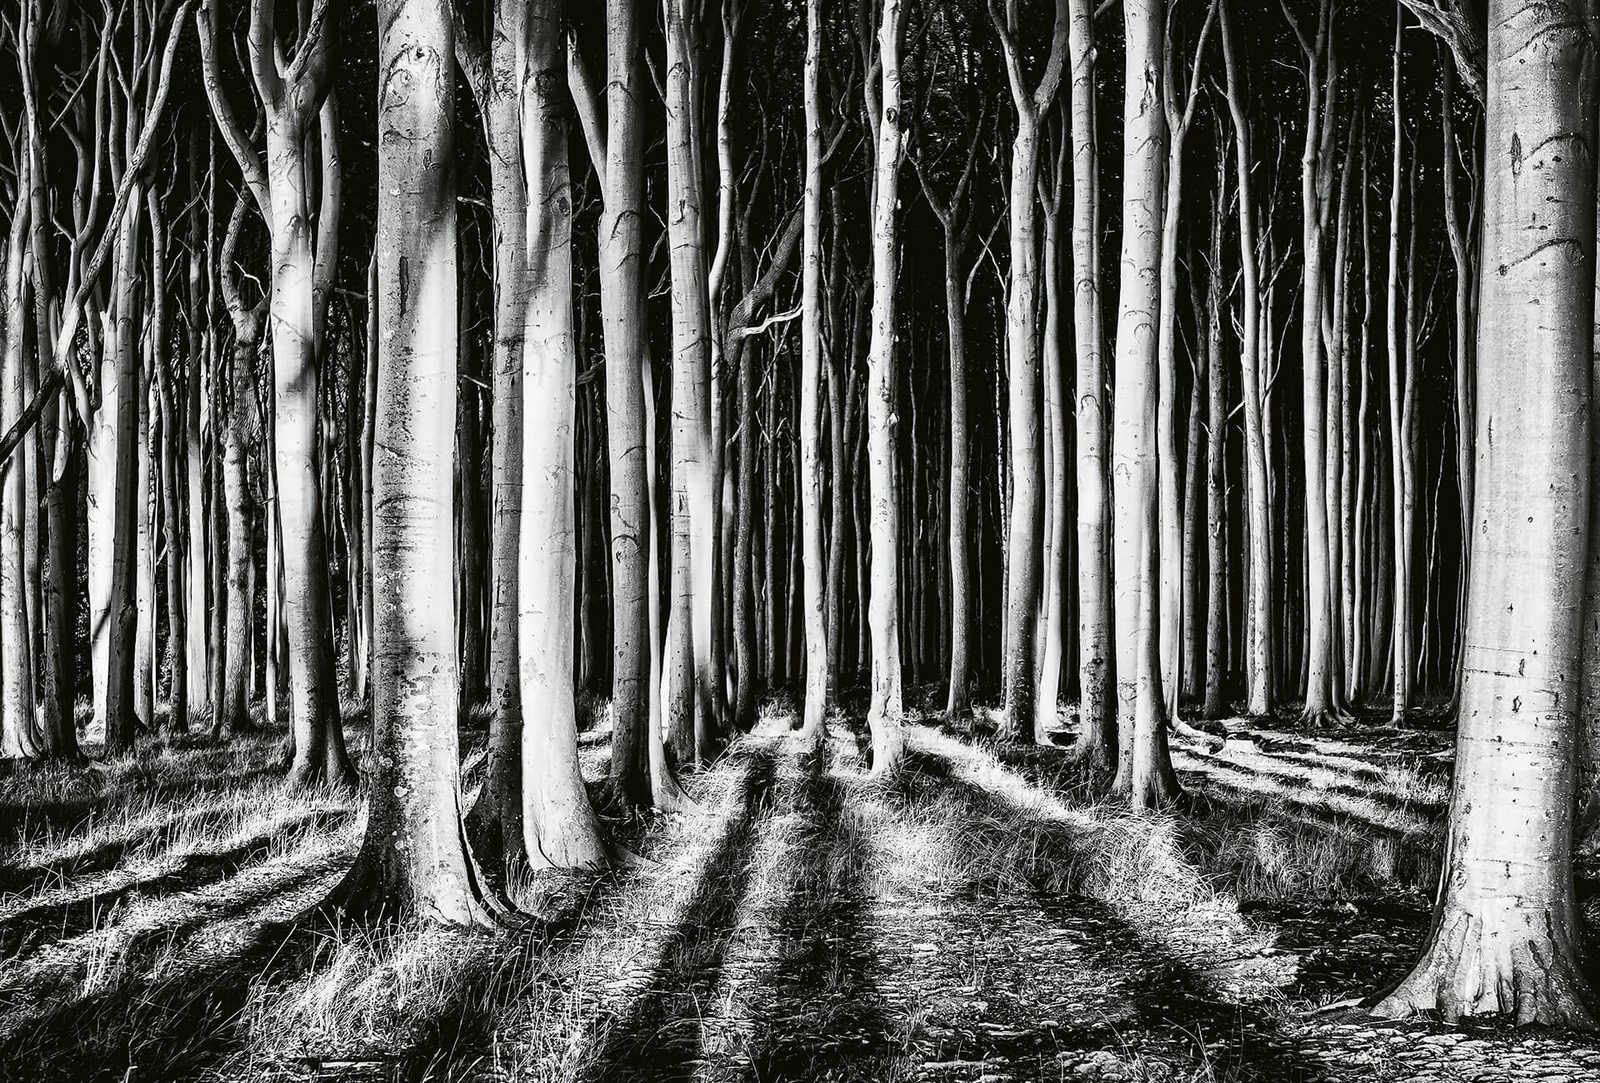 Nature Ghost Forest Behang - Zwart, Wit, Grijs
